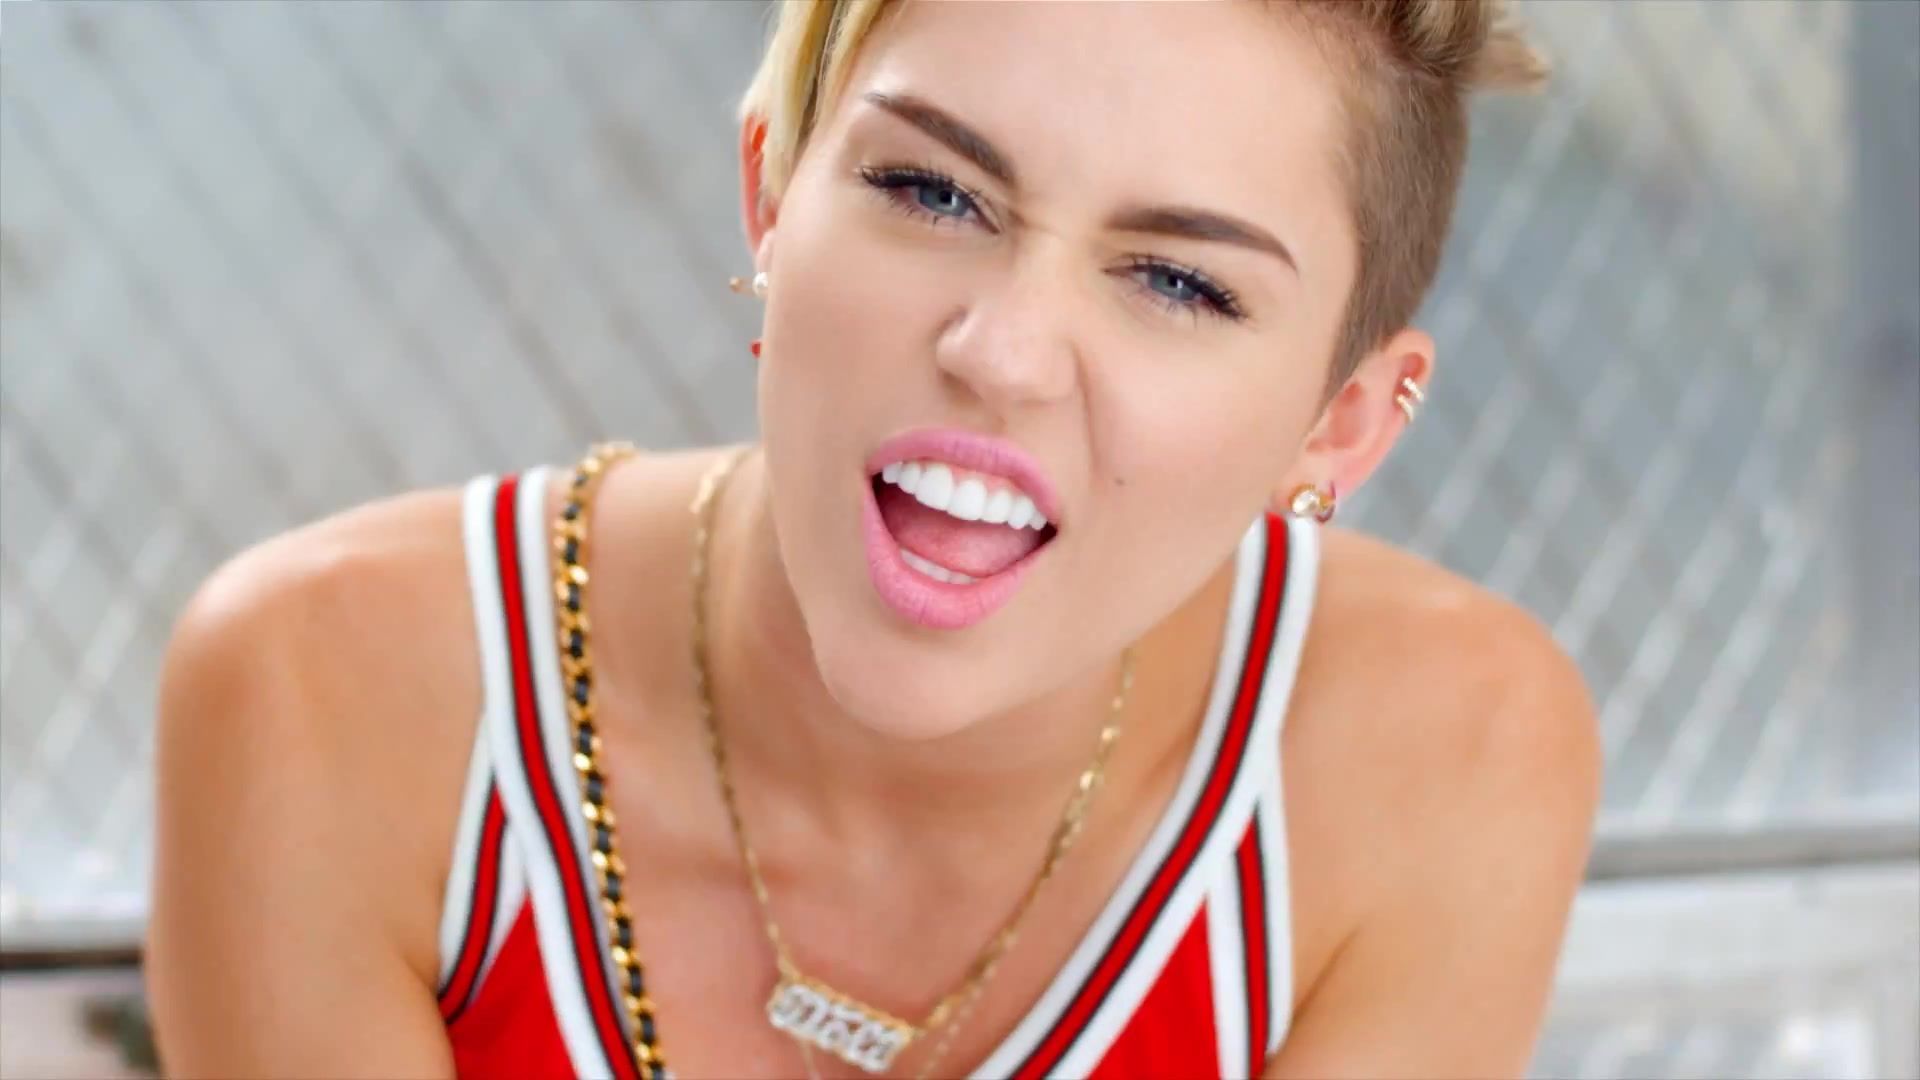 Miley Cyrus regresa a sus raíces con un nuevo look que recuerda a 'Hannah Montana'